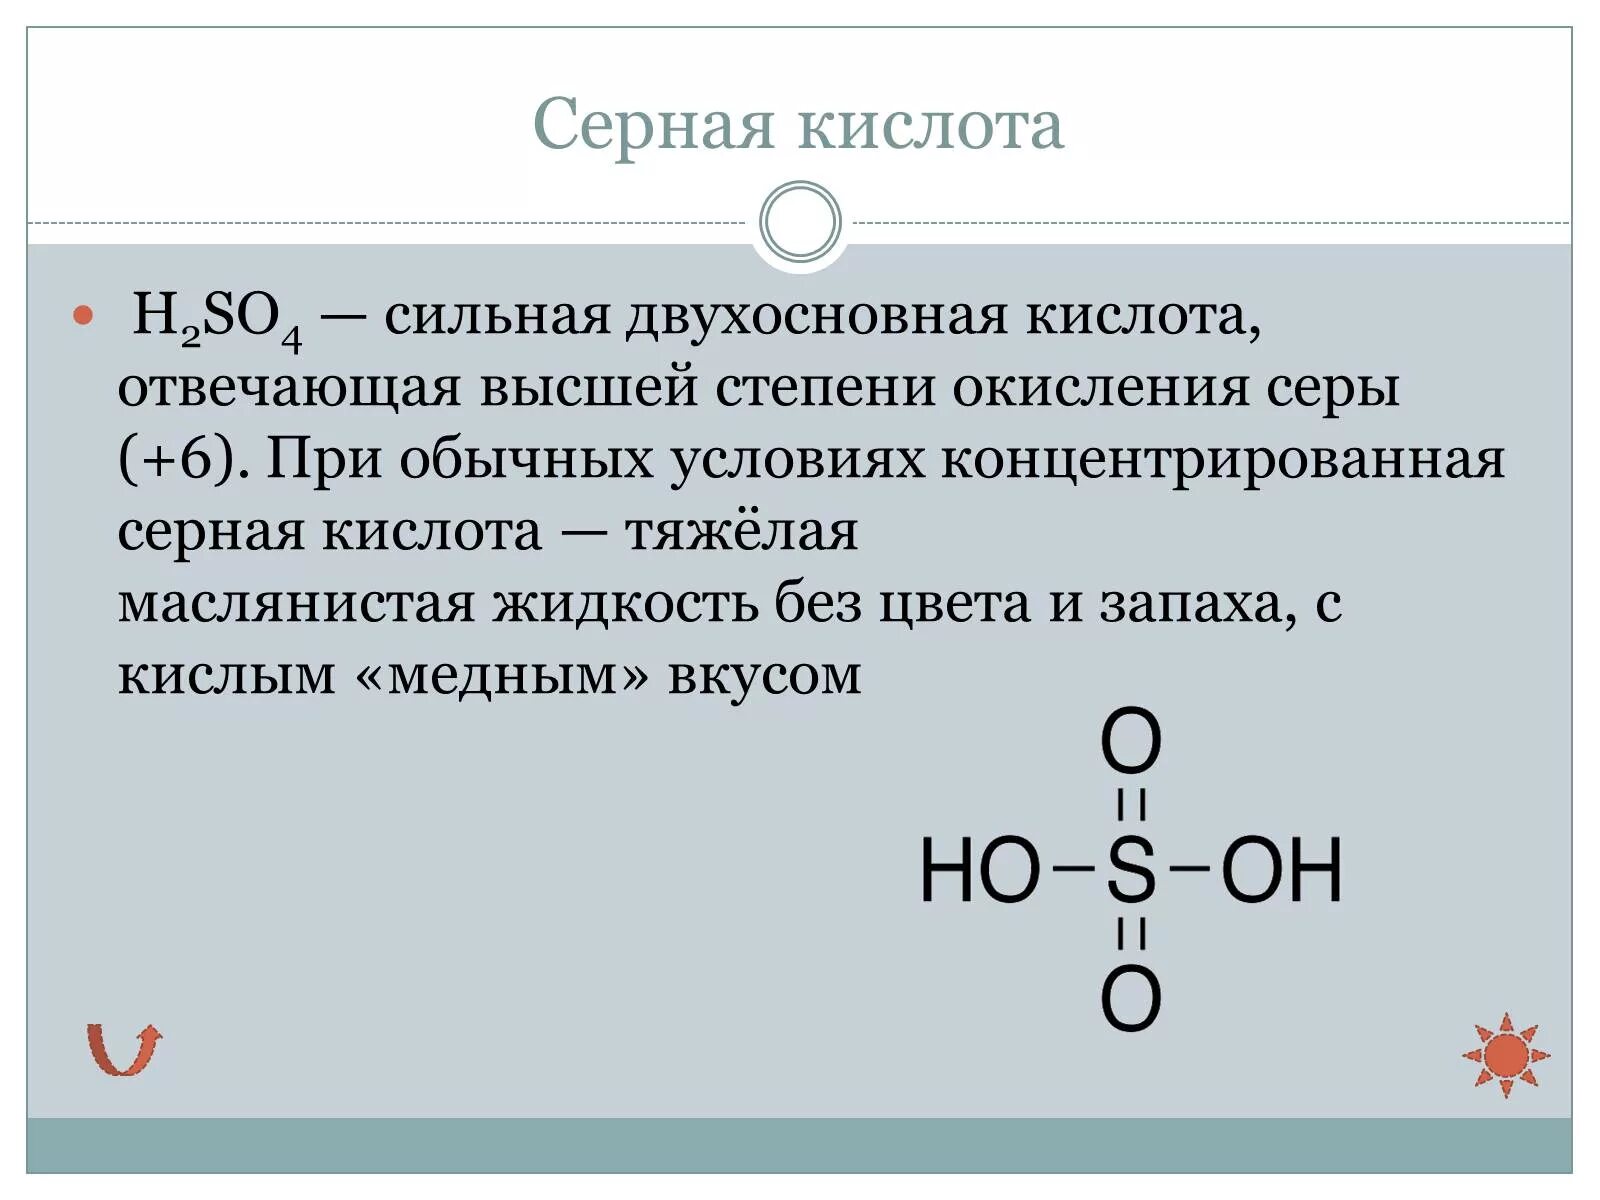 Формула паров серной кислоты. Серная кислота тяжелая маслянистая жидкость. Серная кислота презентация. Презентация на тему серная кислота. Серная кислота презентация 9 класс.